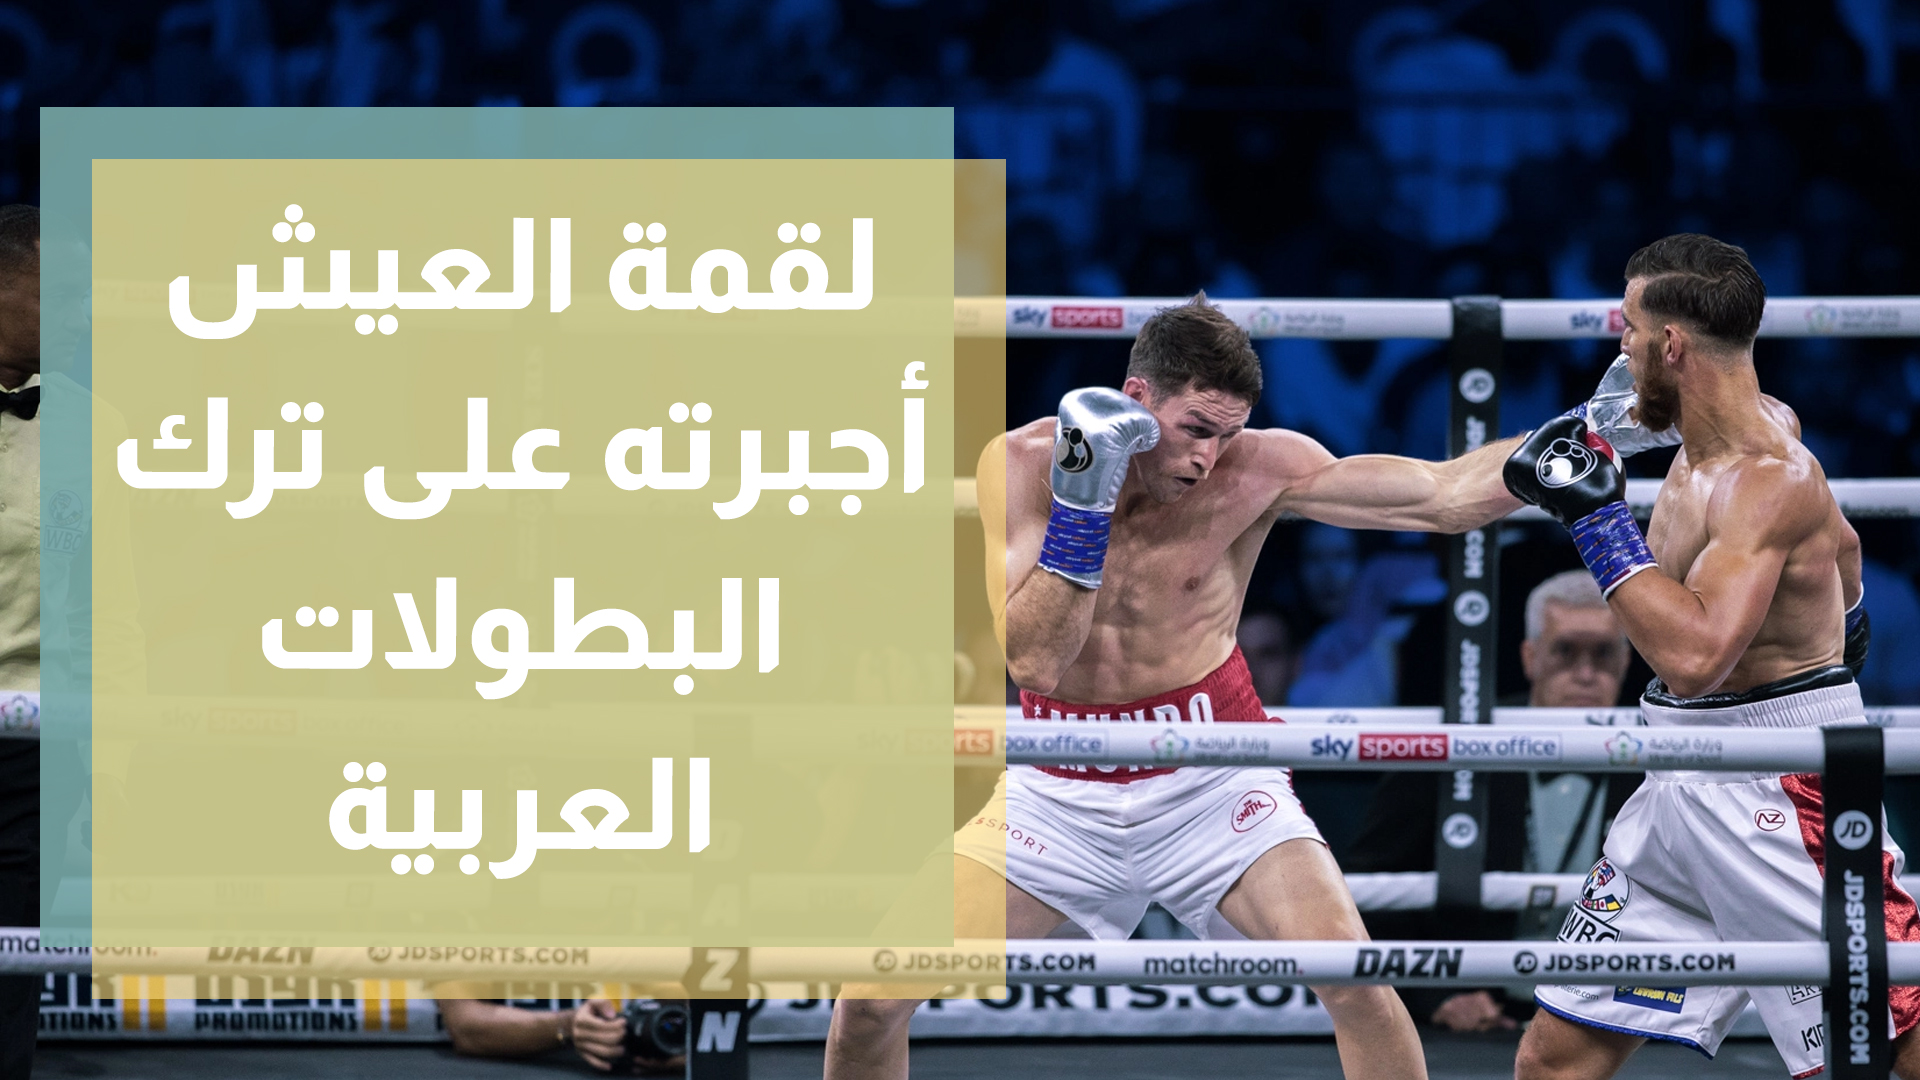 الملاكم رائد شباب يترك البطولات العربية والميداليات الذهبية من أجل لقمة العيش